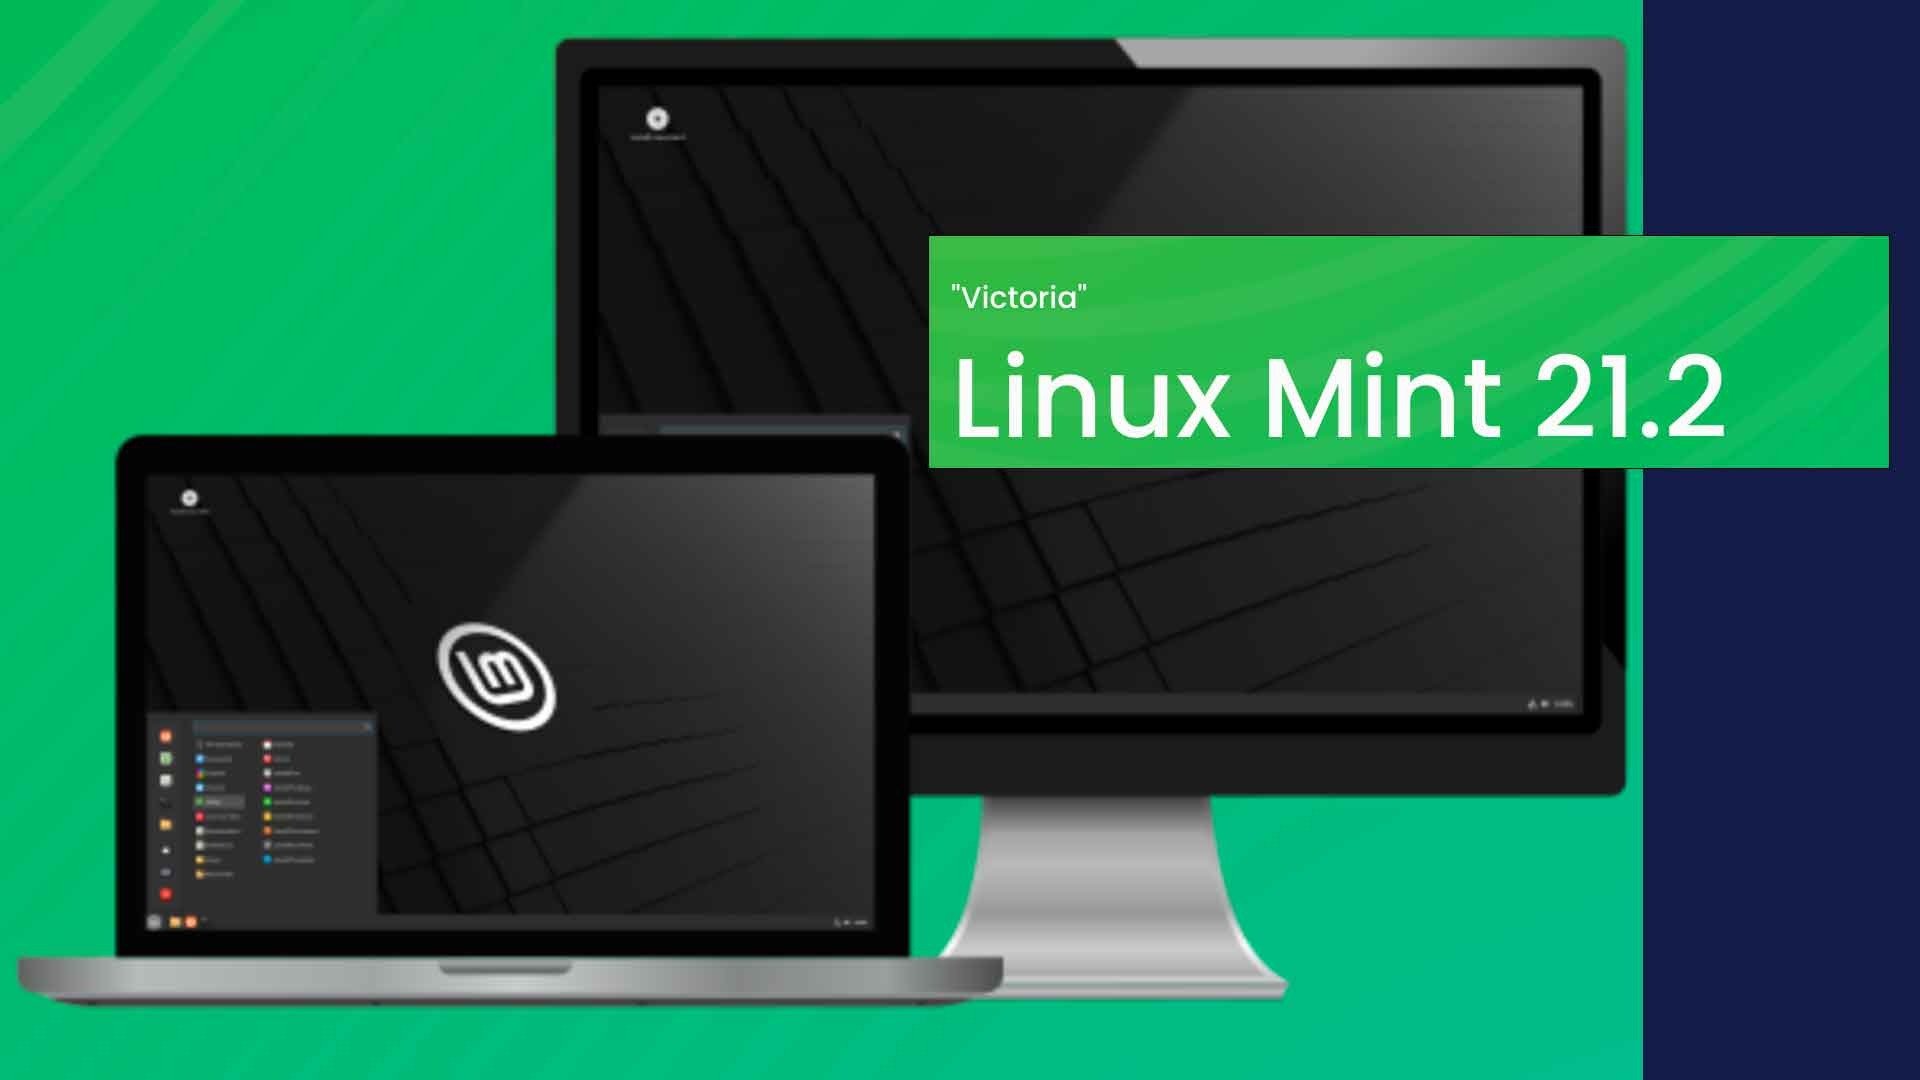 A nova versão Linux Mint 21.2, de codinome "Victoria".